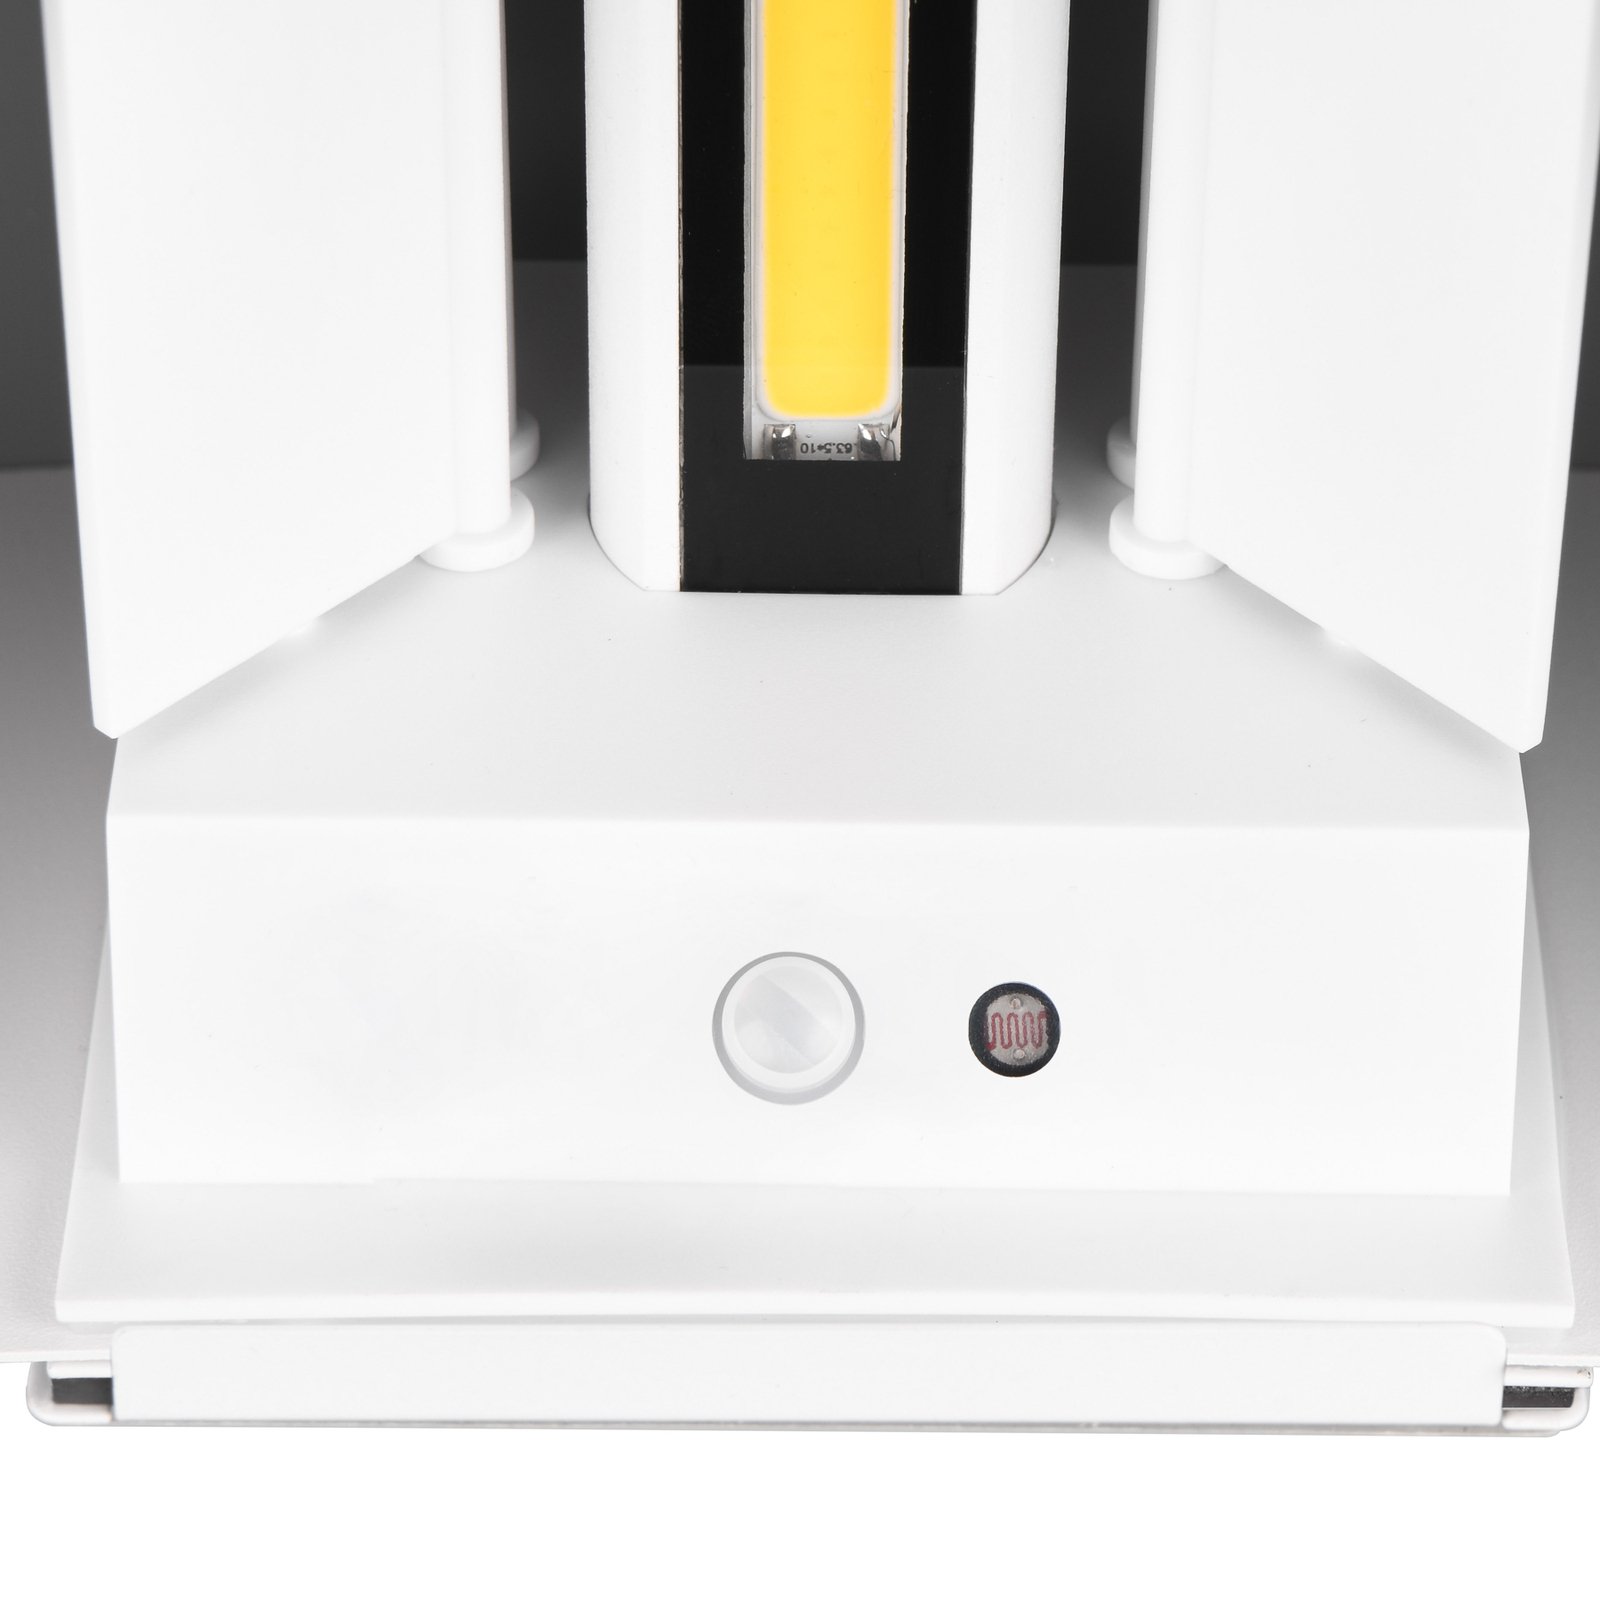 Applique d'extérieur LED rechargeable Talent, blanc, largeur 16 cm, capteur